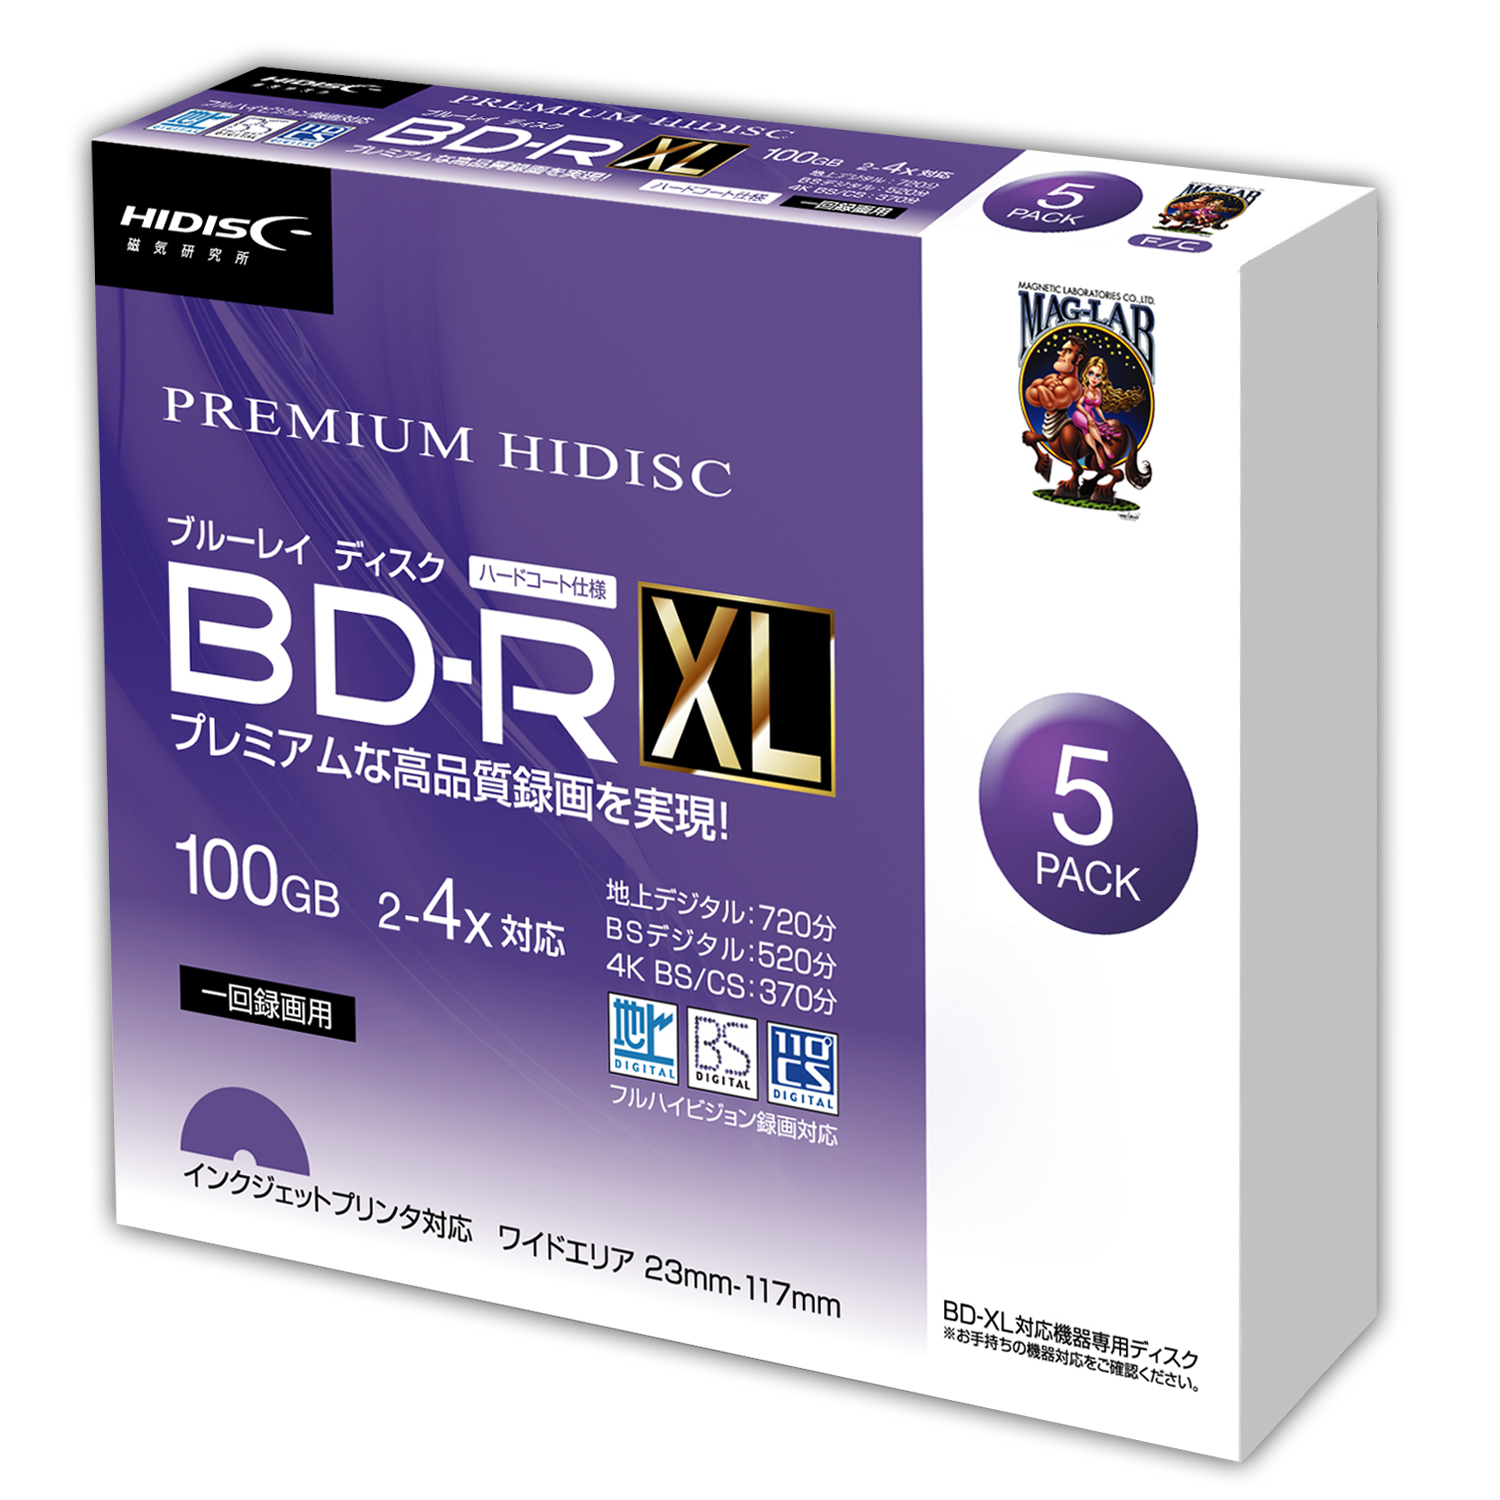 PREMIUM HIDISC BD-RXL 100GB 2-4倍速 映像用デジタル放送対応 インクジェットプリンタ対応5枚5mmスリムケース入り